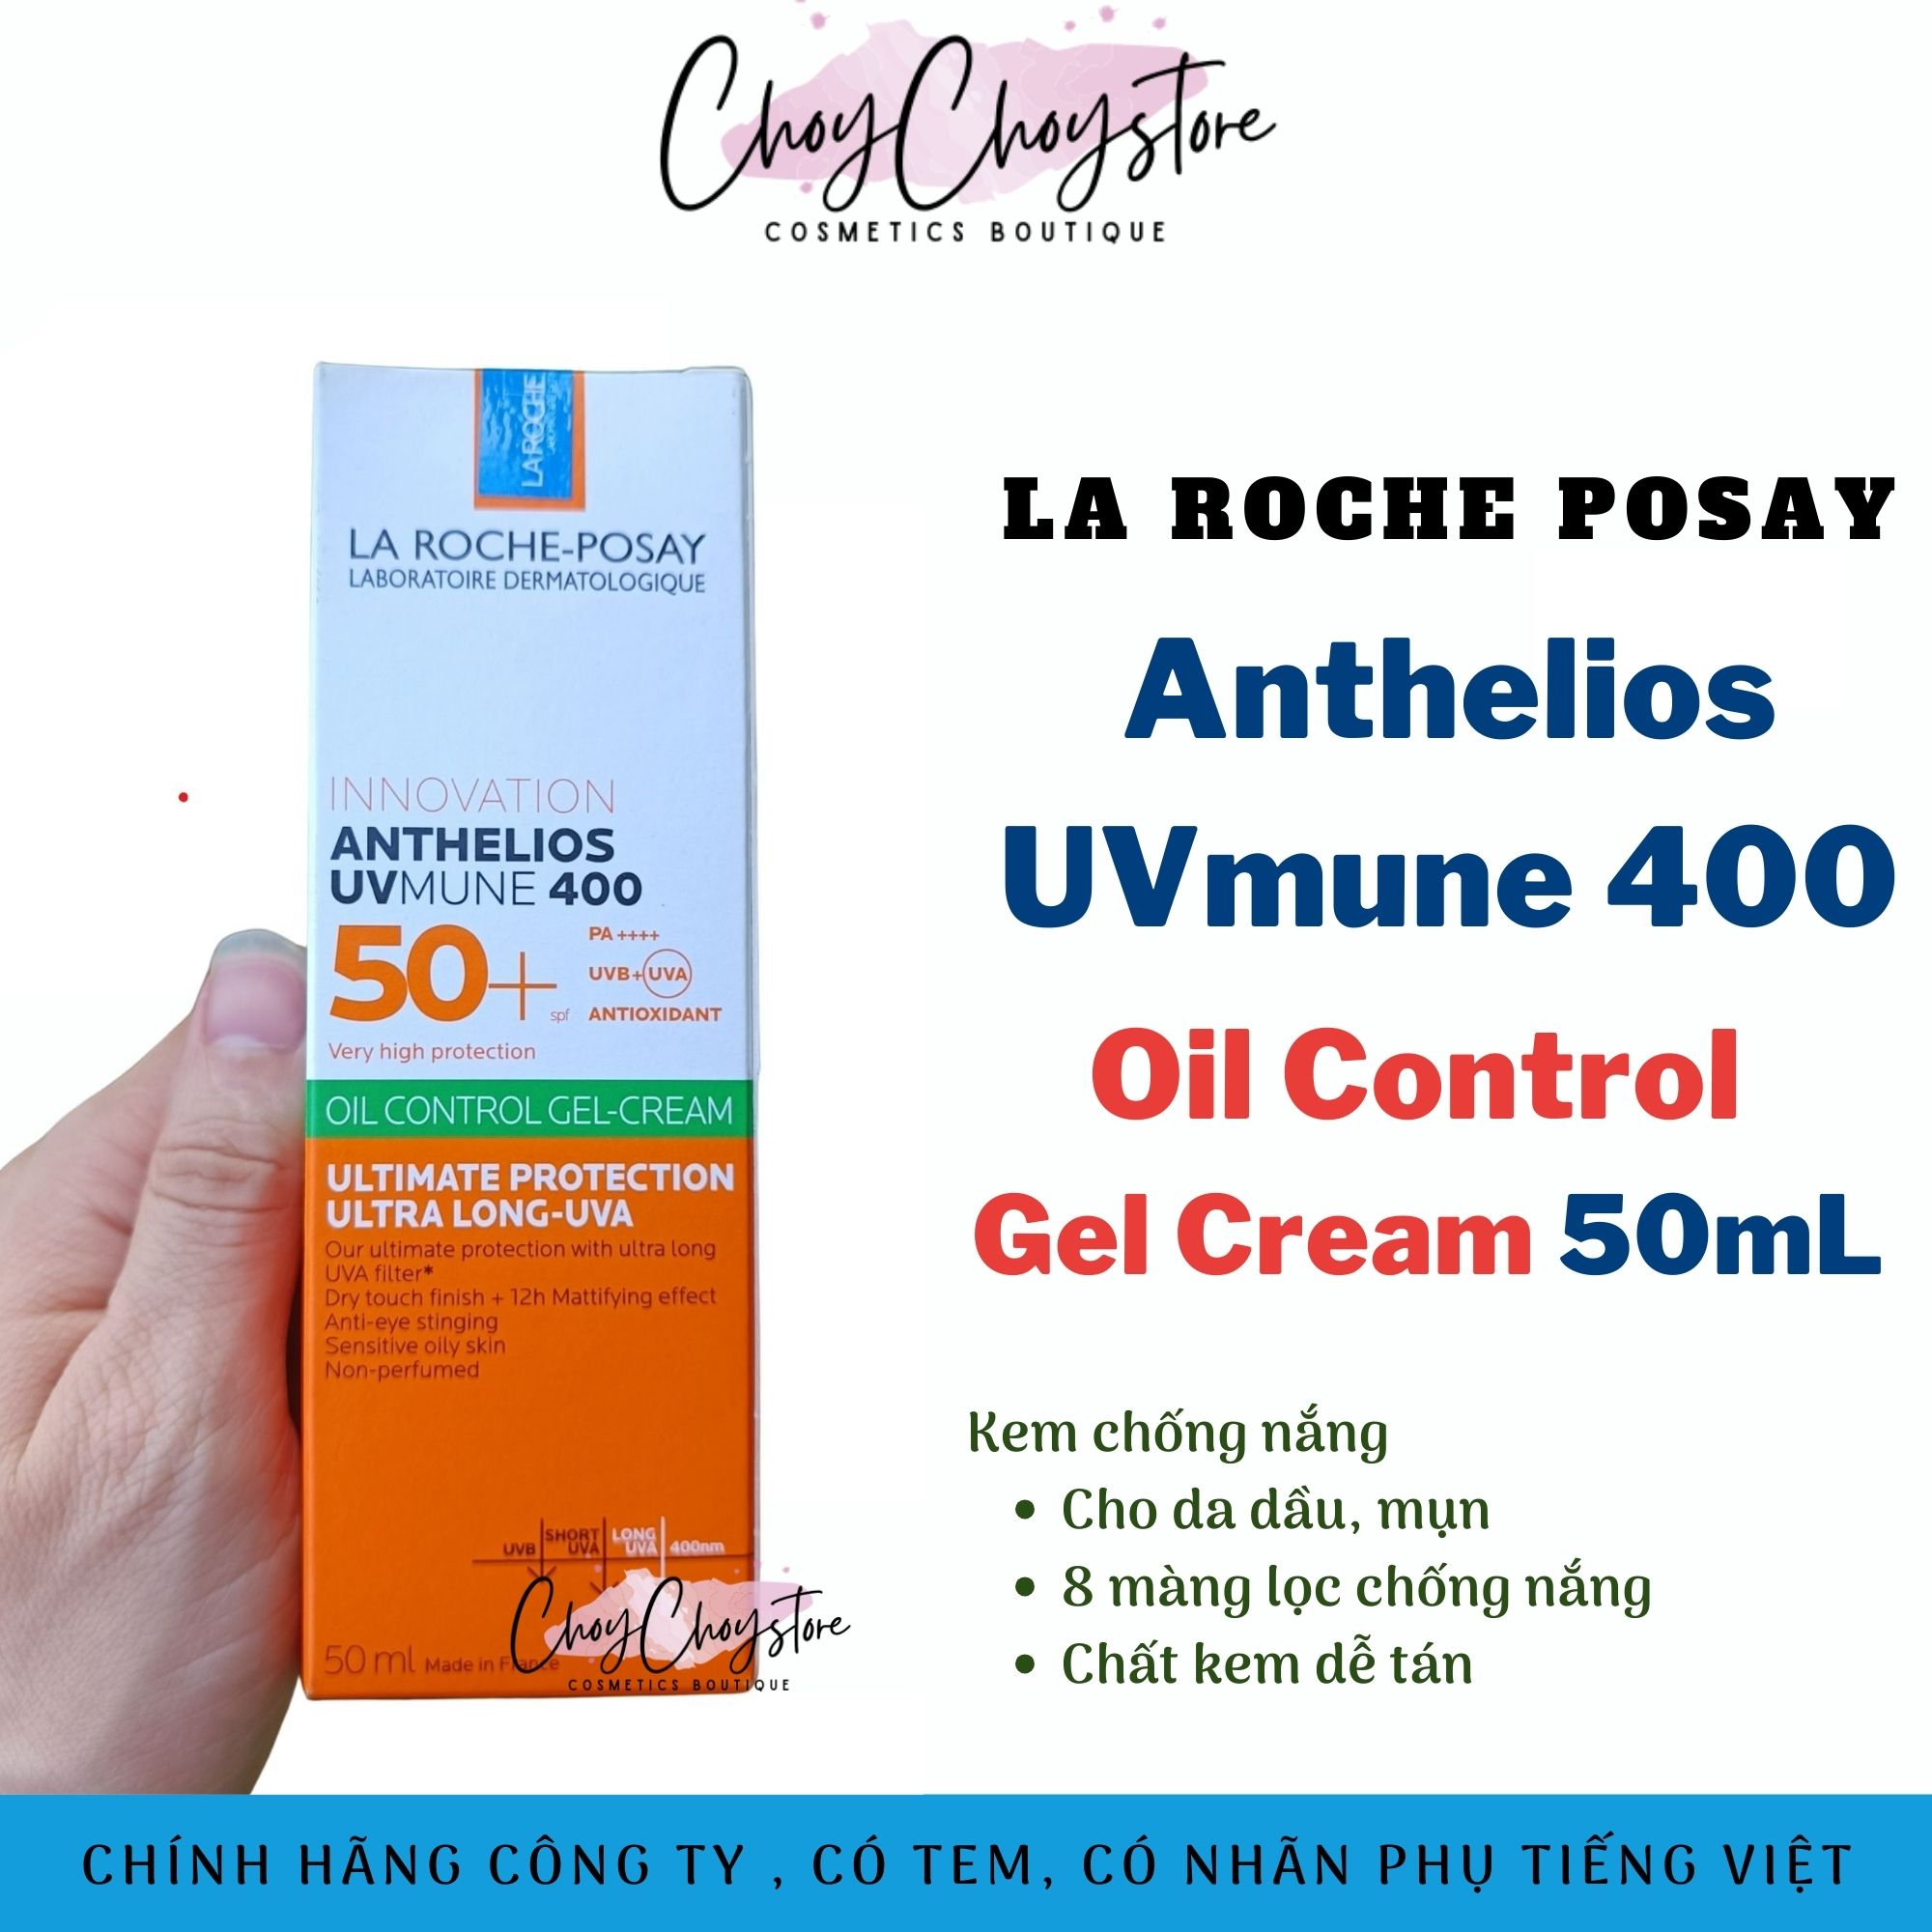 Kem Chống Nắng La Roche Posay Anthelios UVmune 400 Oil Control Cream 50mL Giúp Kiểm Soát Bóng Nhờn &amp; Bảo Vệ Da